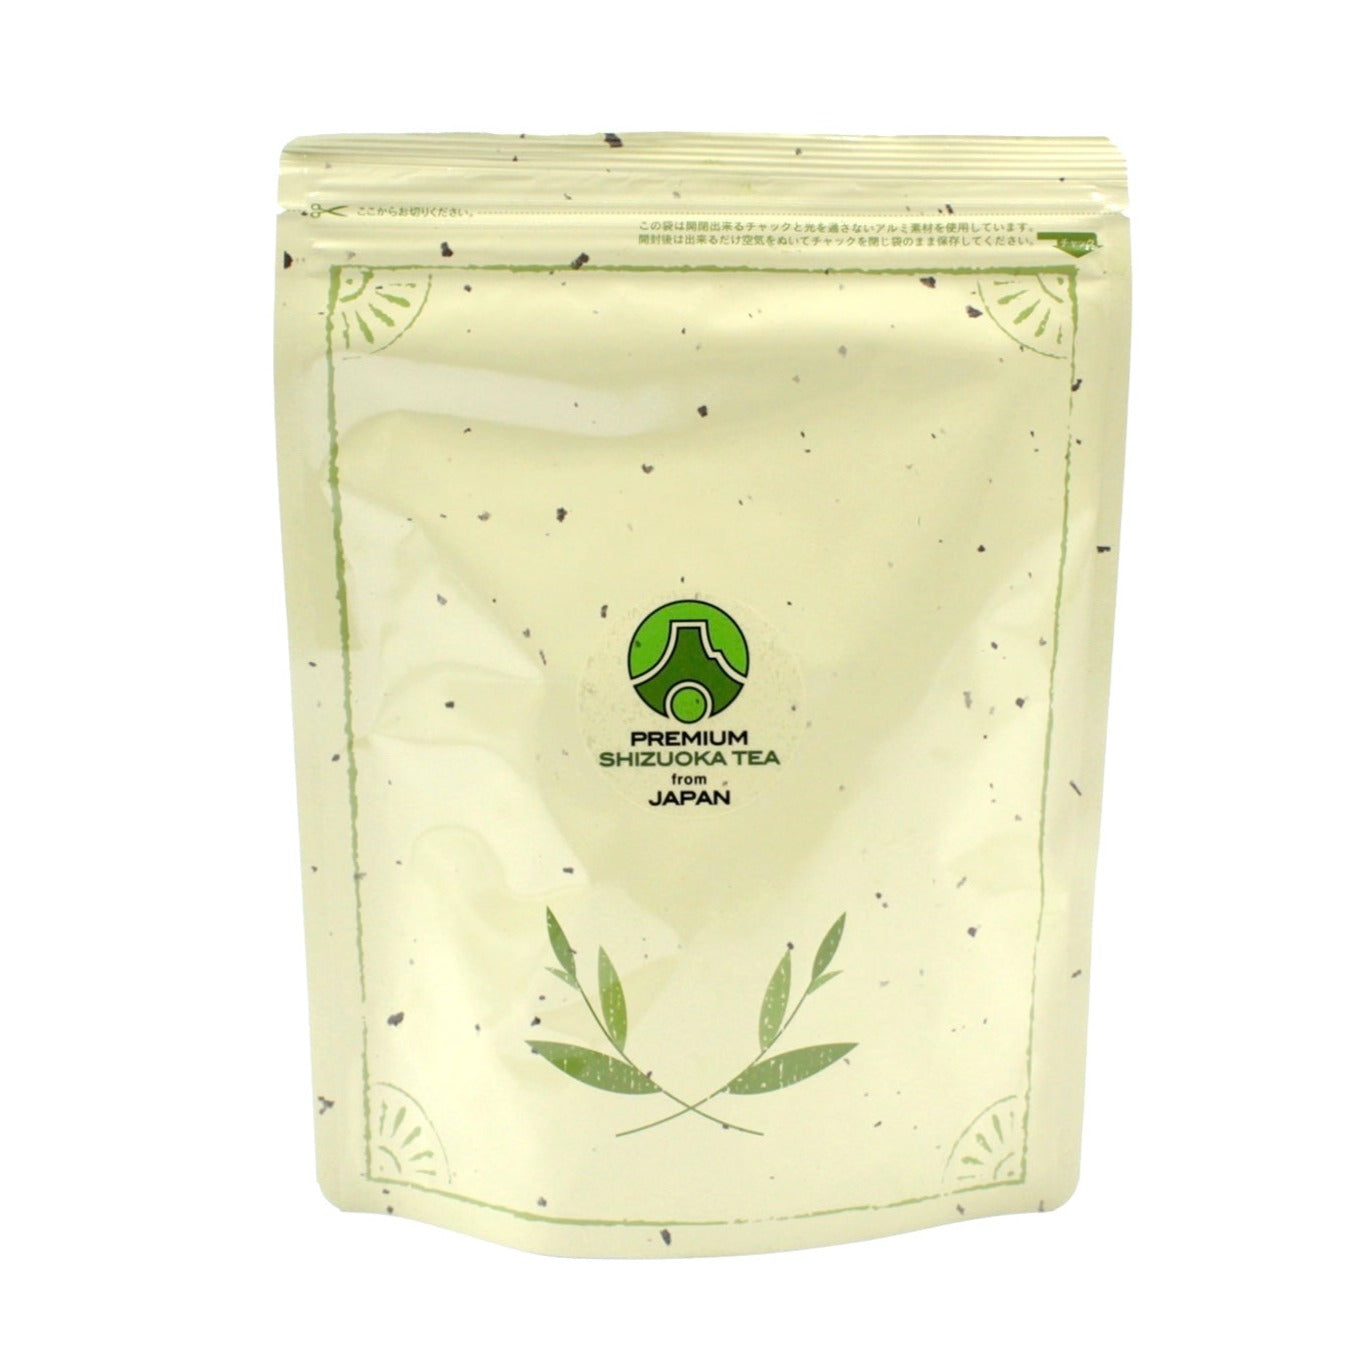 Premium Green Tea Bags